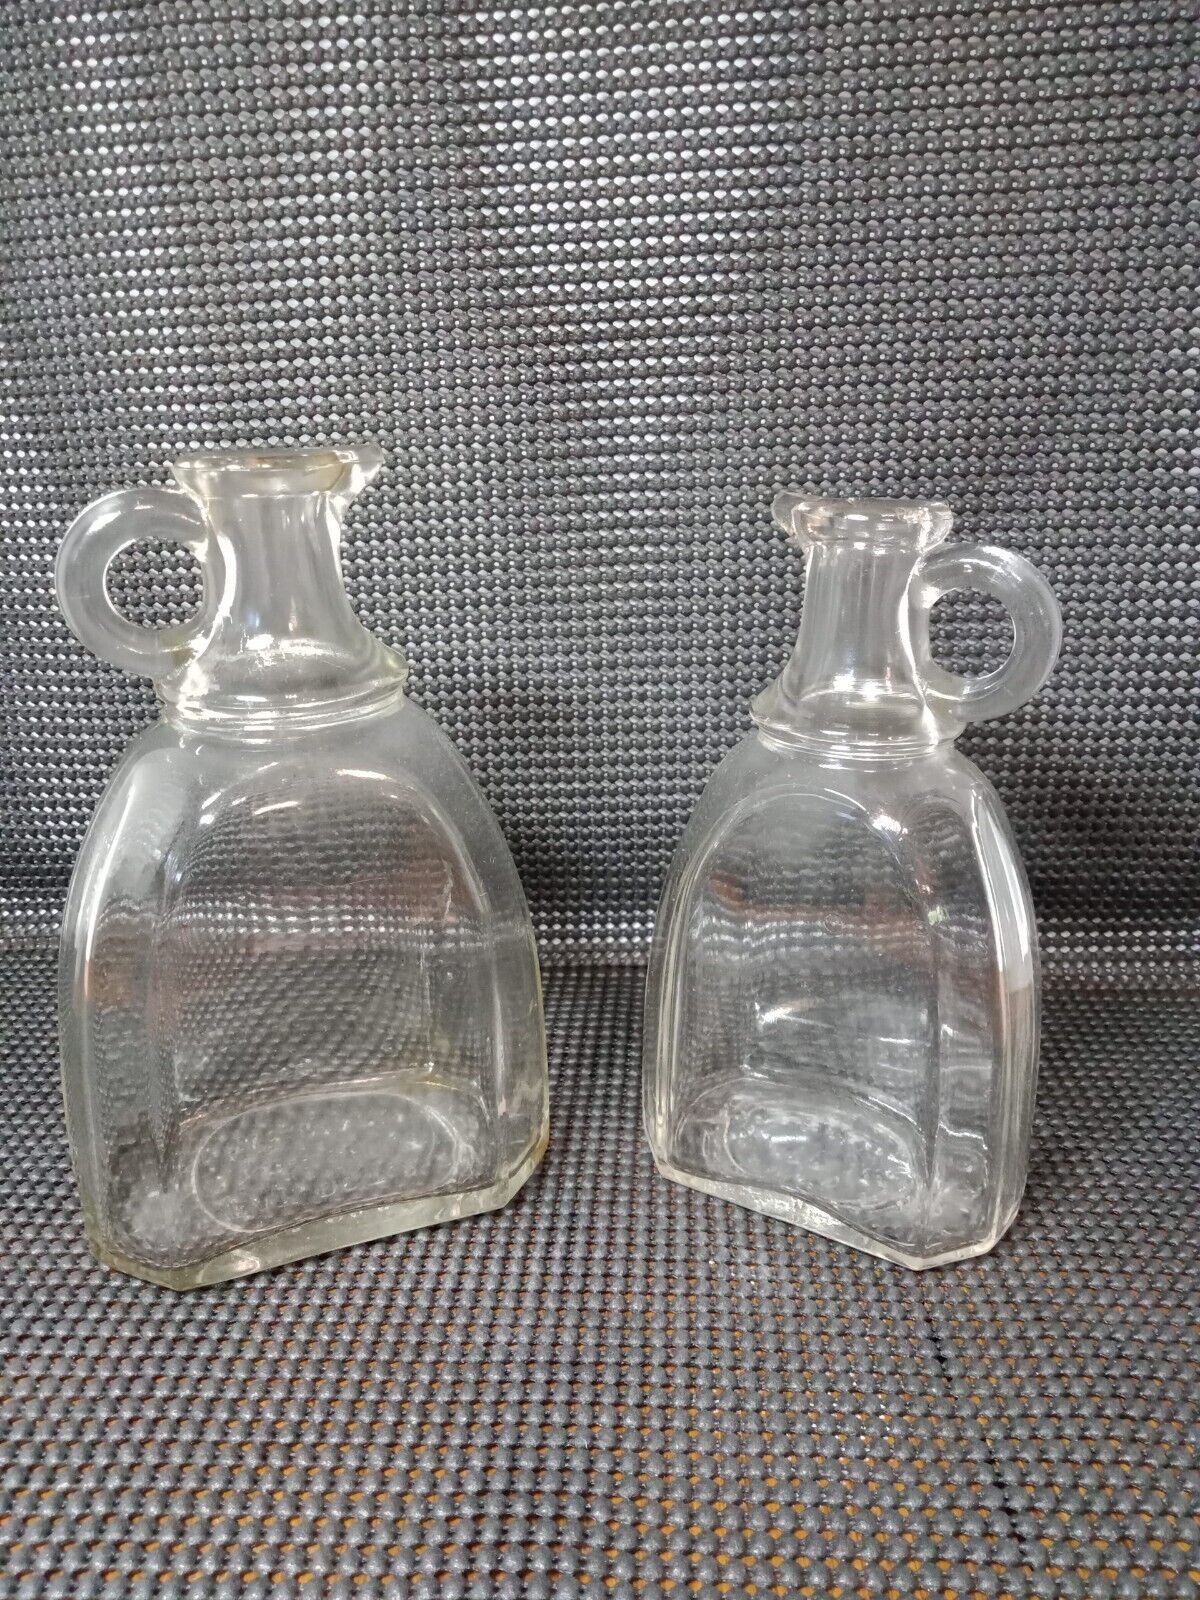 2 Antique Oil Vinegar Cruet Spouted Bottles 1923-24